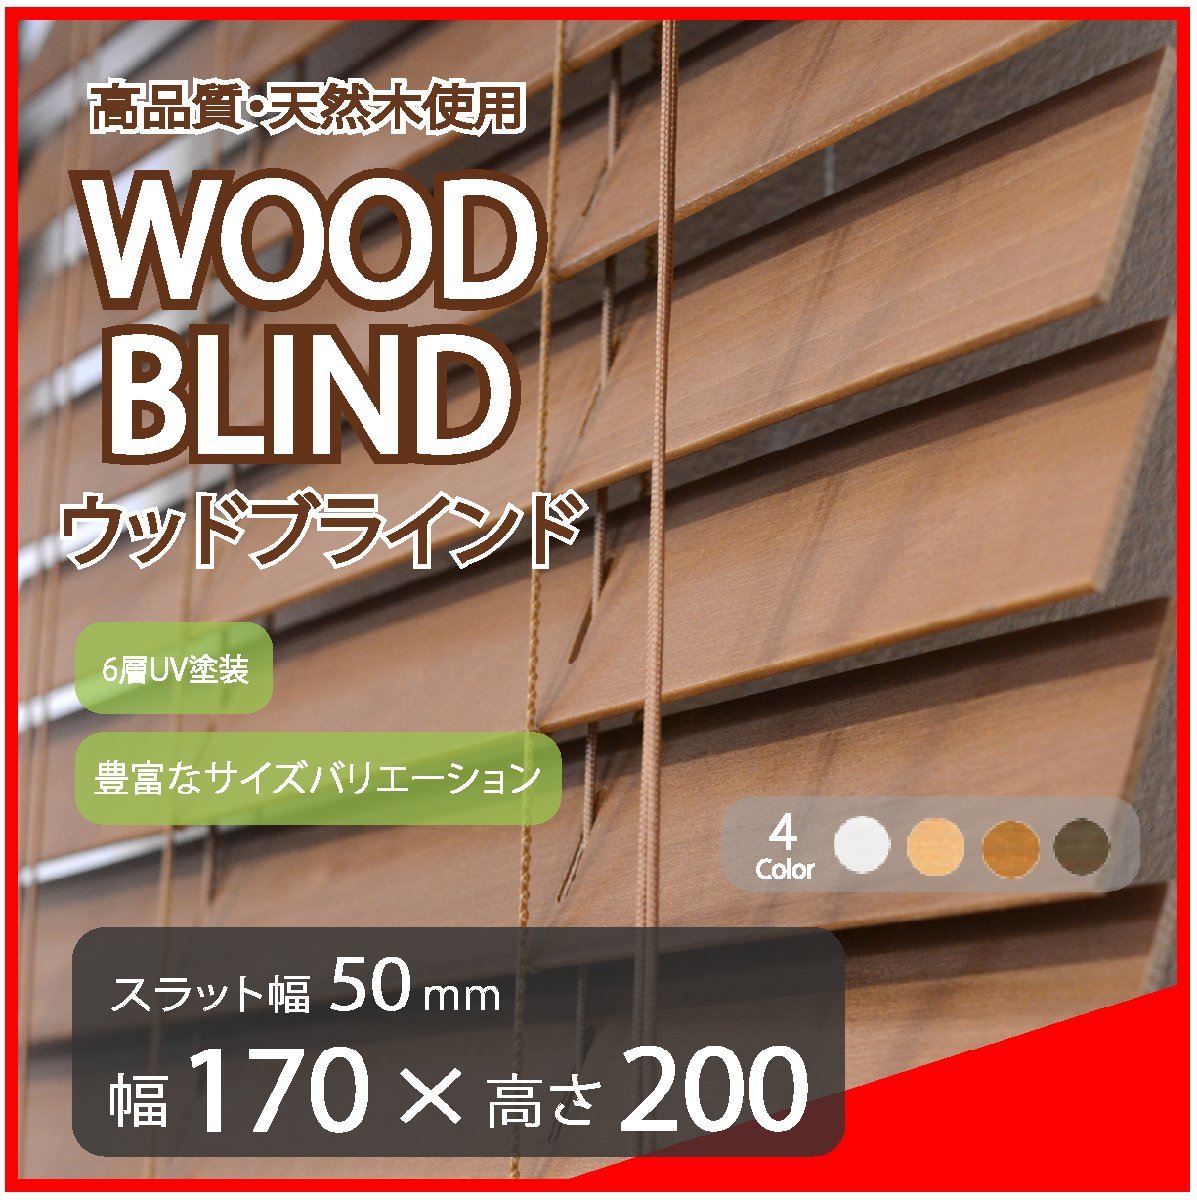 高品質 ウッドブラインド 木製 ブラインド 既成サイズ スラット(羽根)幅50mm 幅170cm×高さ200cm ブラウン